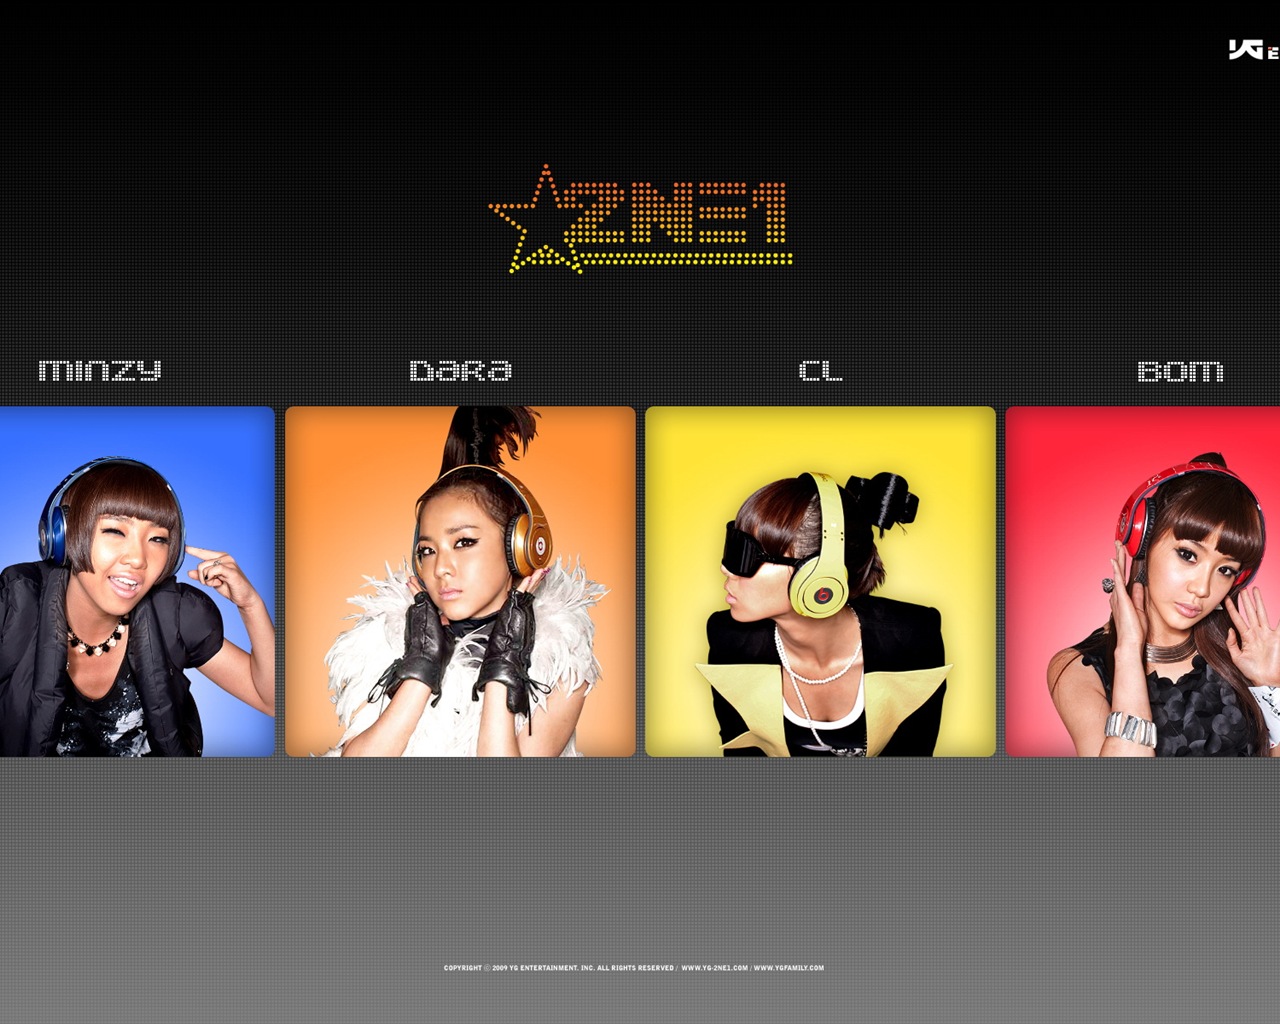 韩国音乐女孩组合 2NE1 高清壁纸16 - 1280x1024